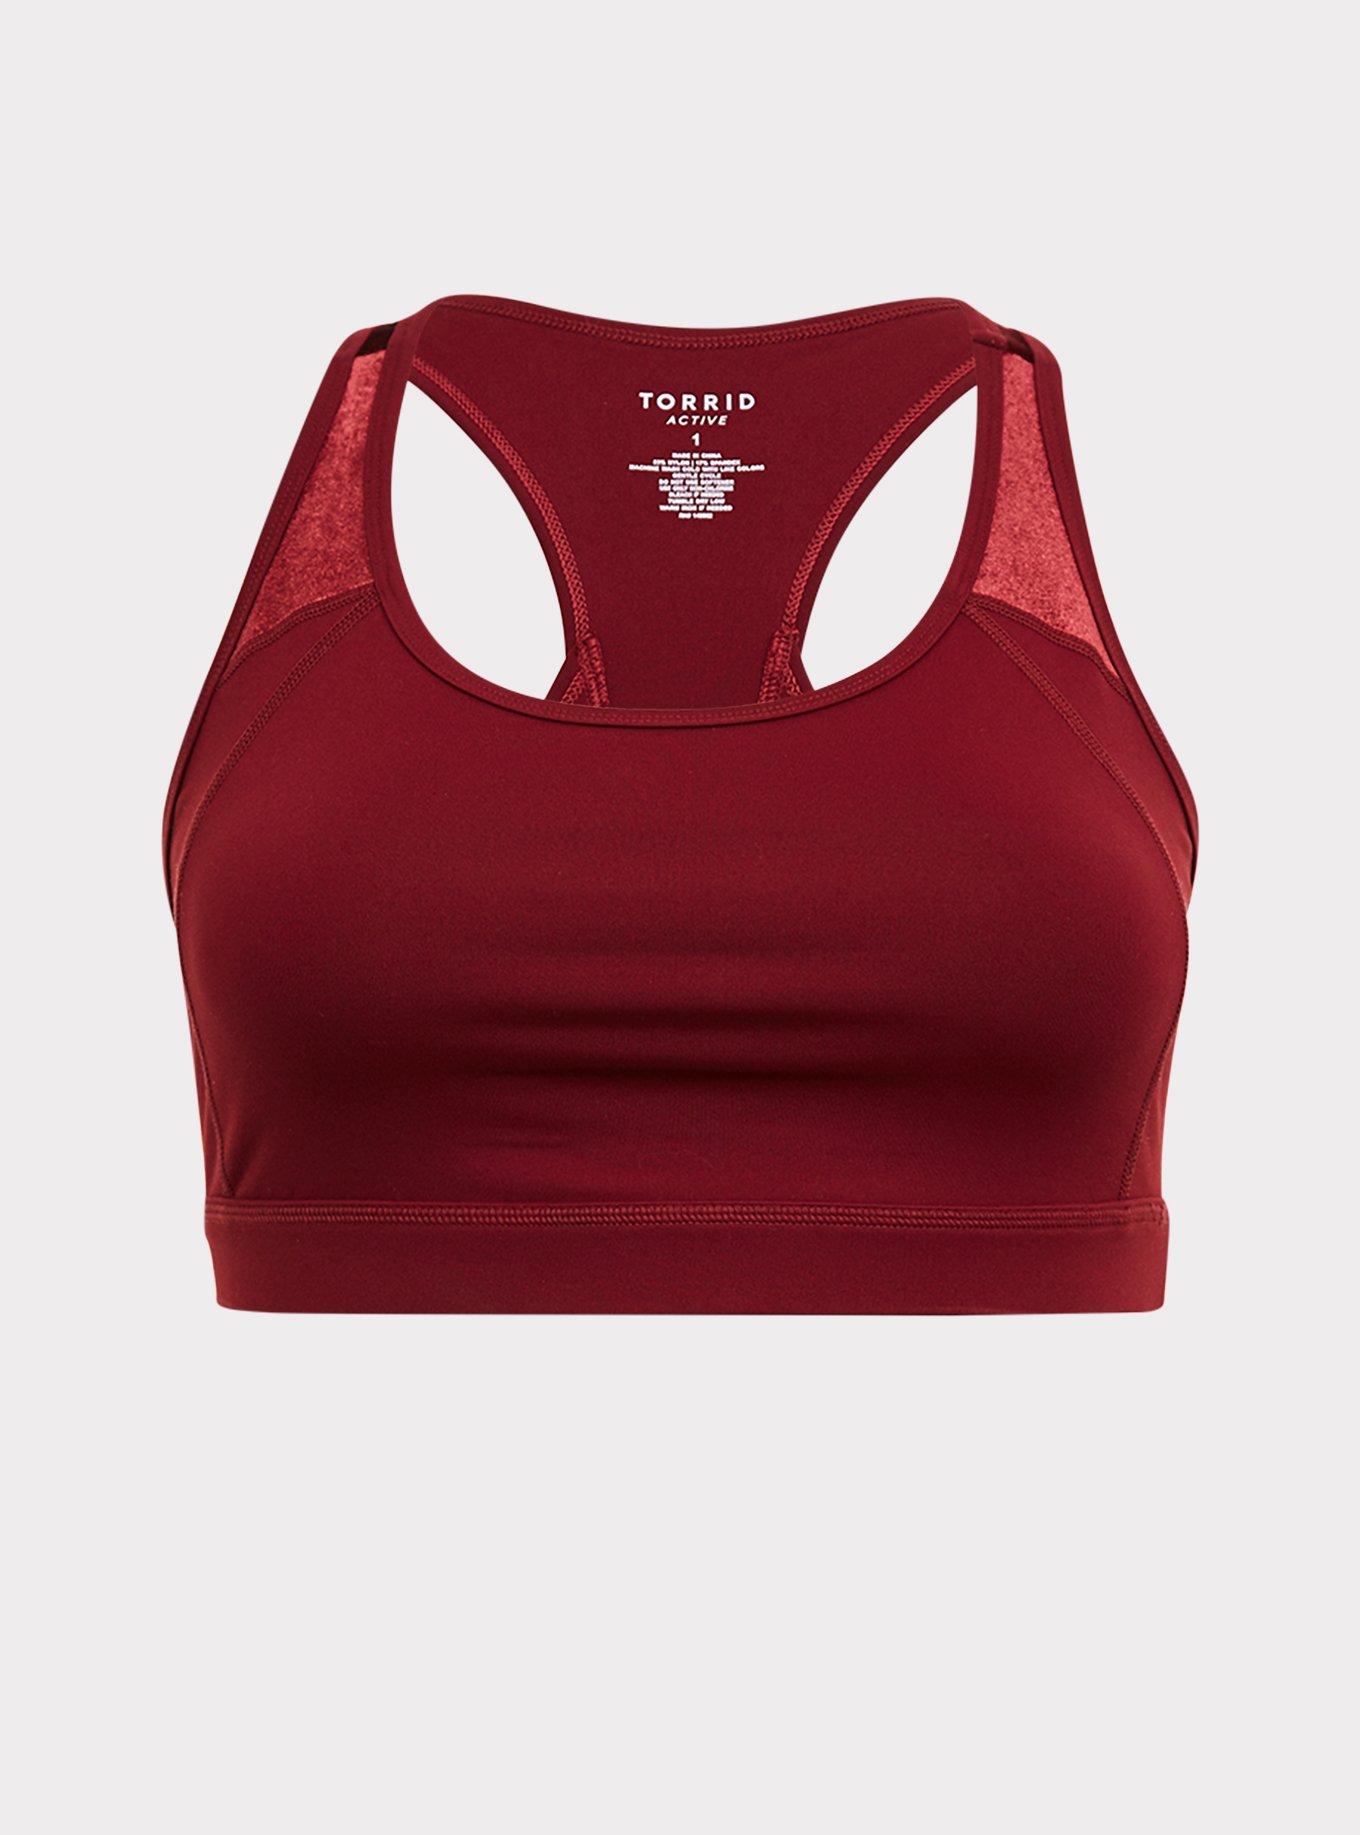 Plus Size - Burgundy Red Velvet Inset Wicking Active Sports Bra - Torrid